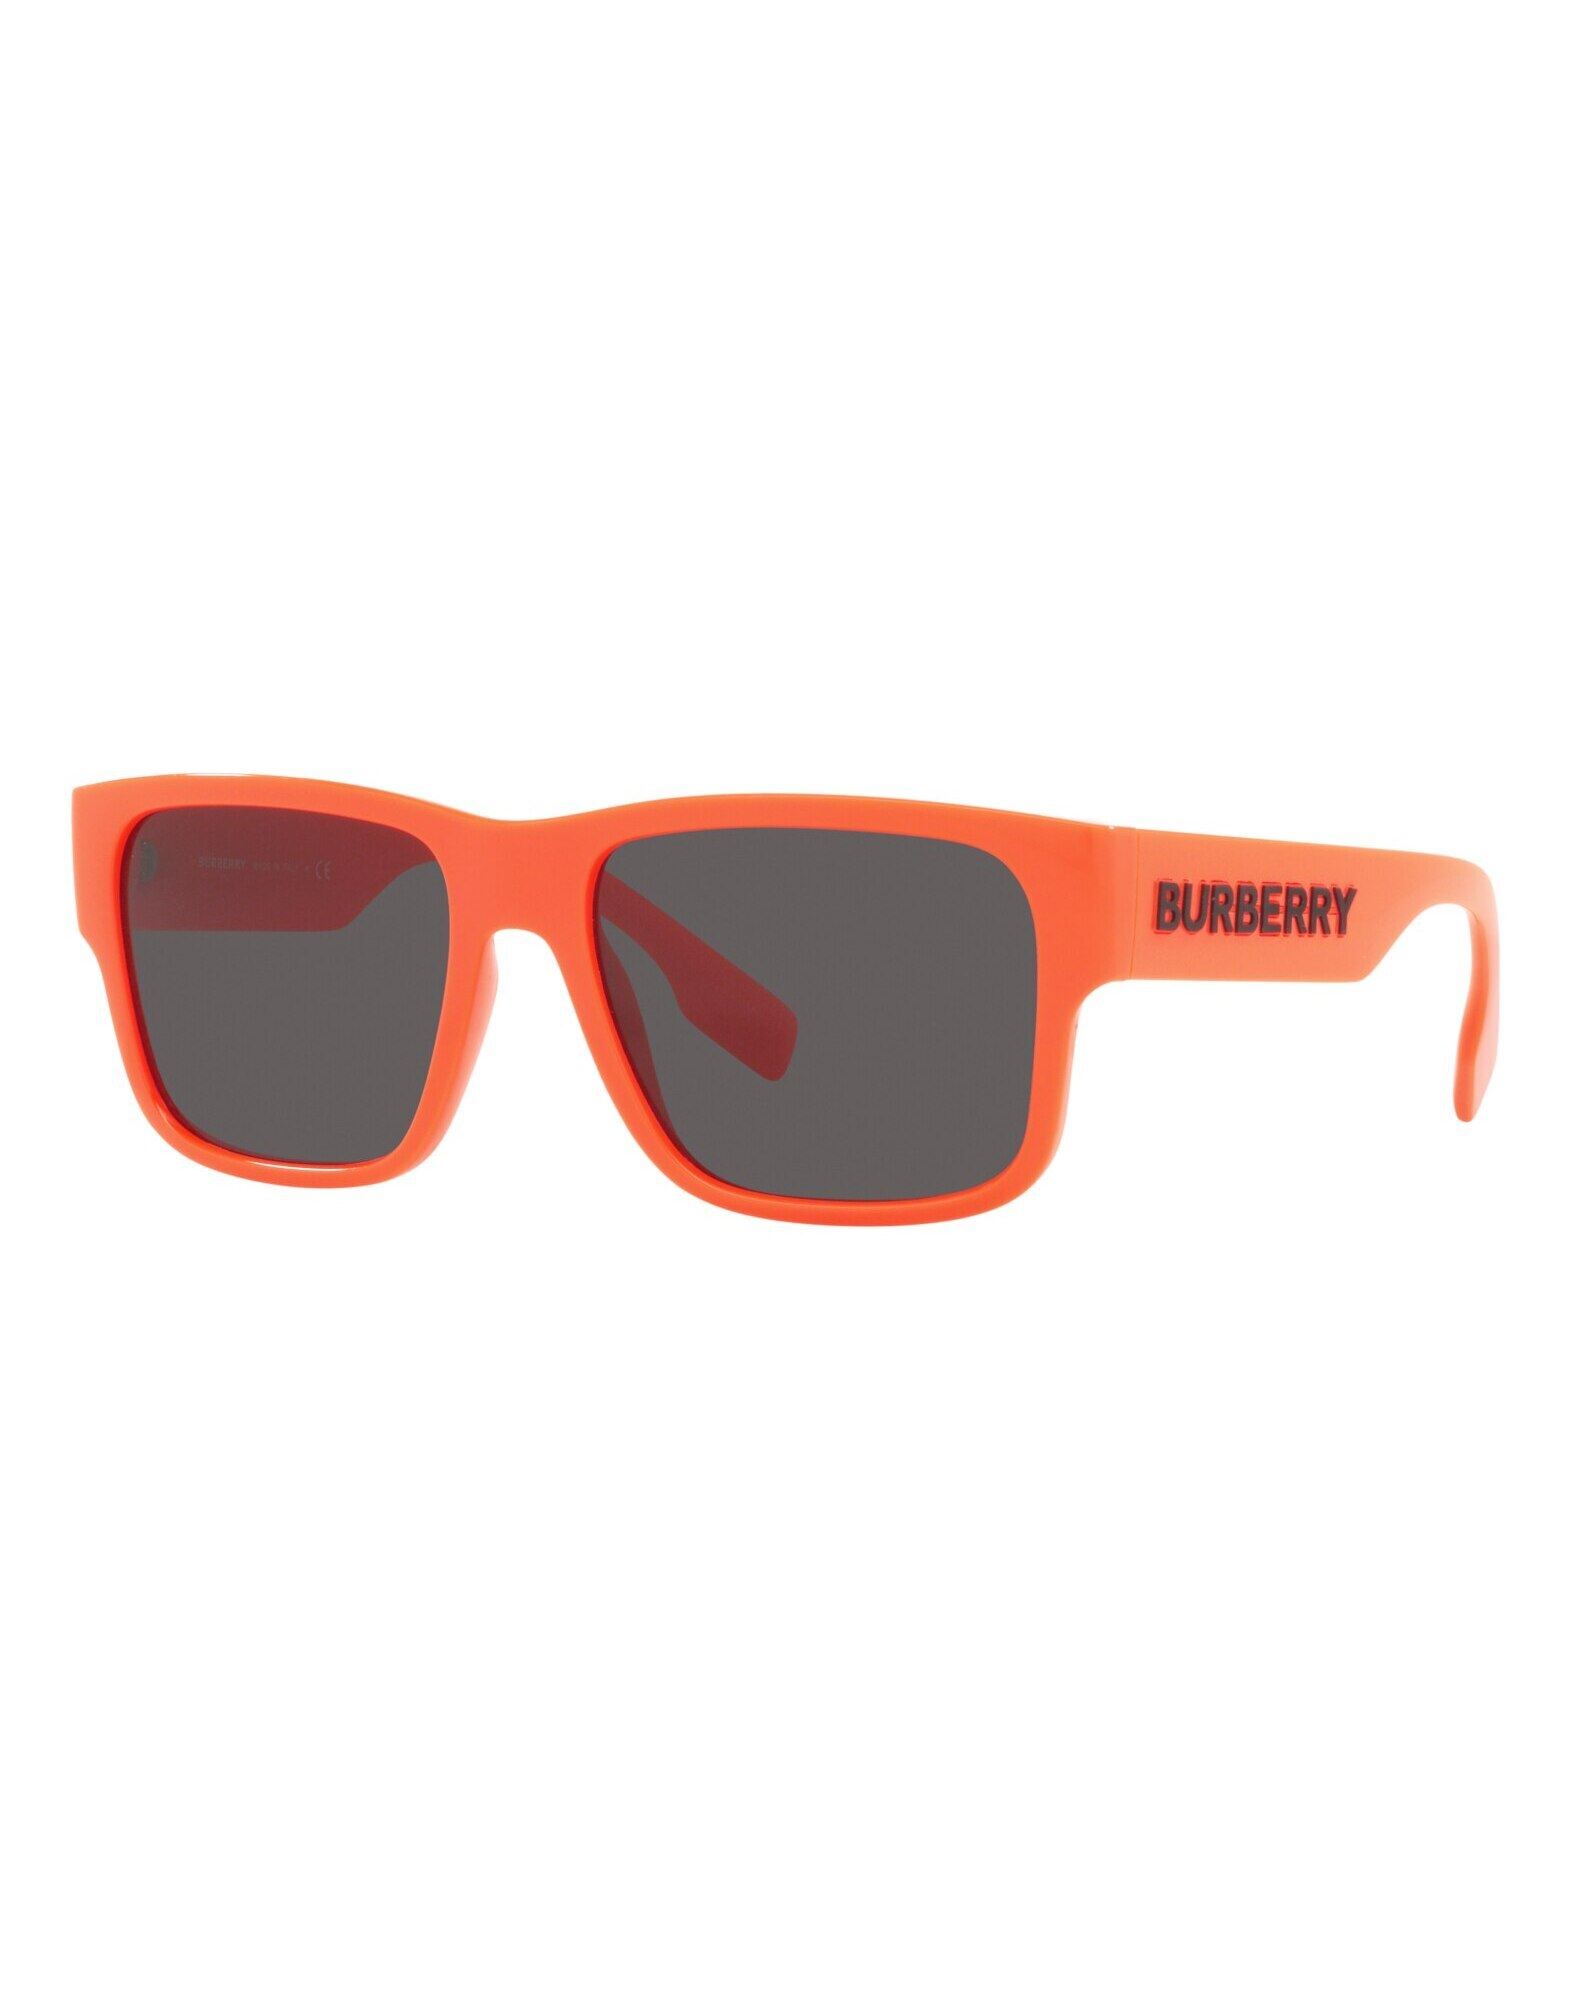 BURBERRY Sonnenbrille Herren Orange von BURBERRY